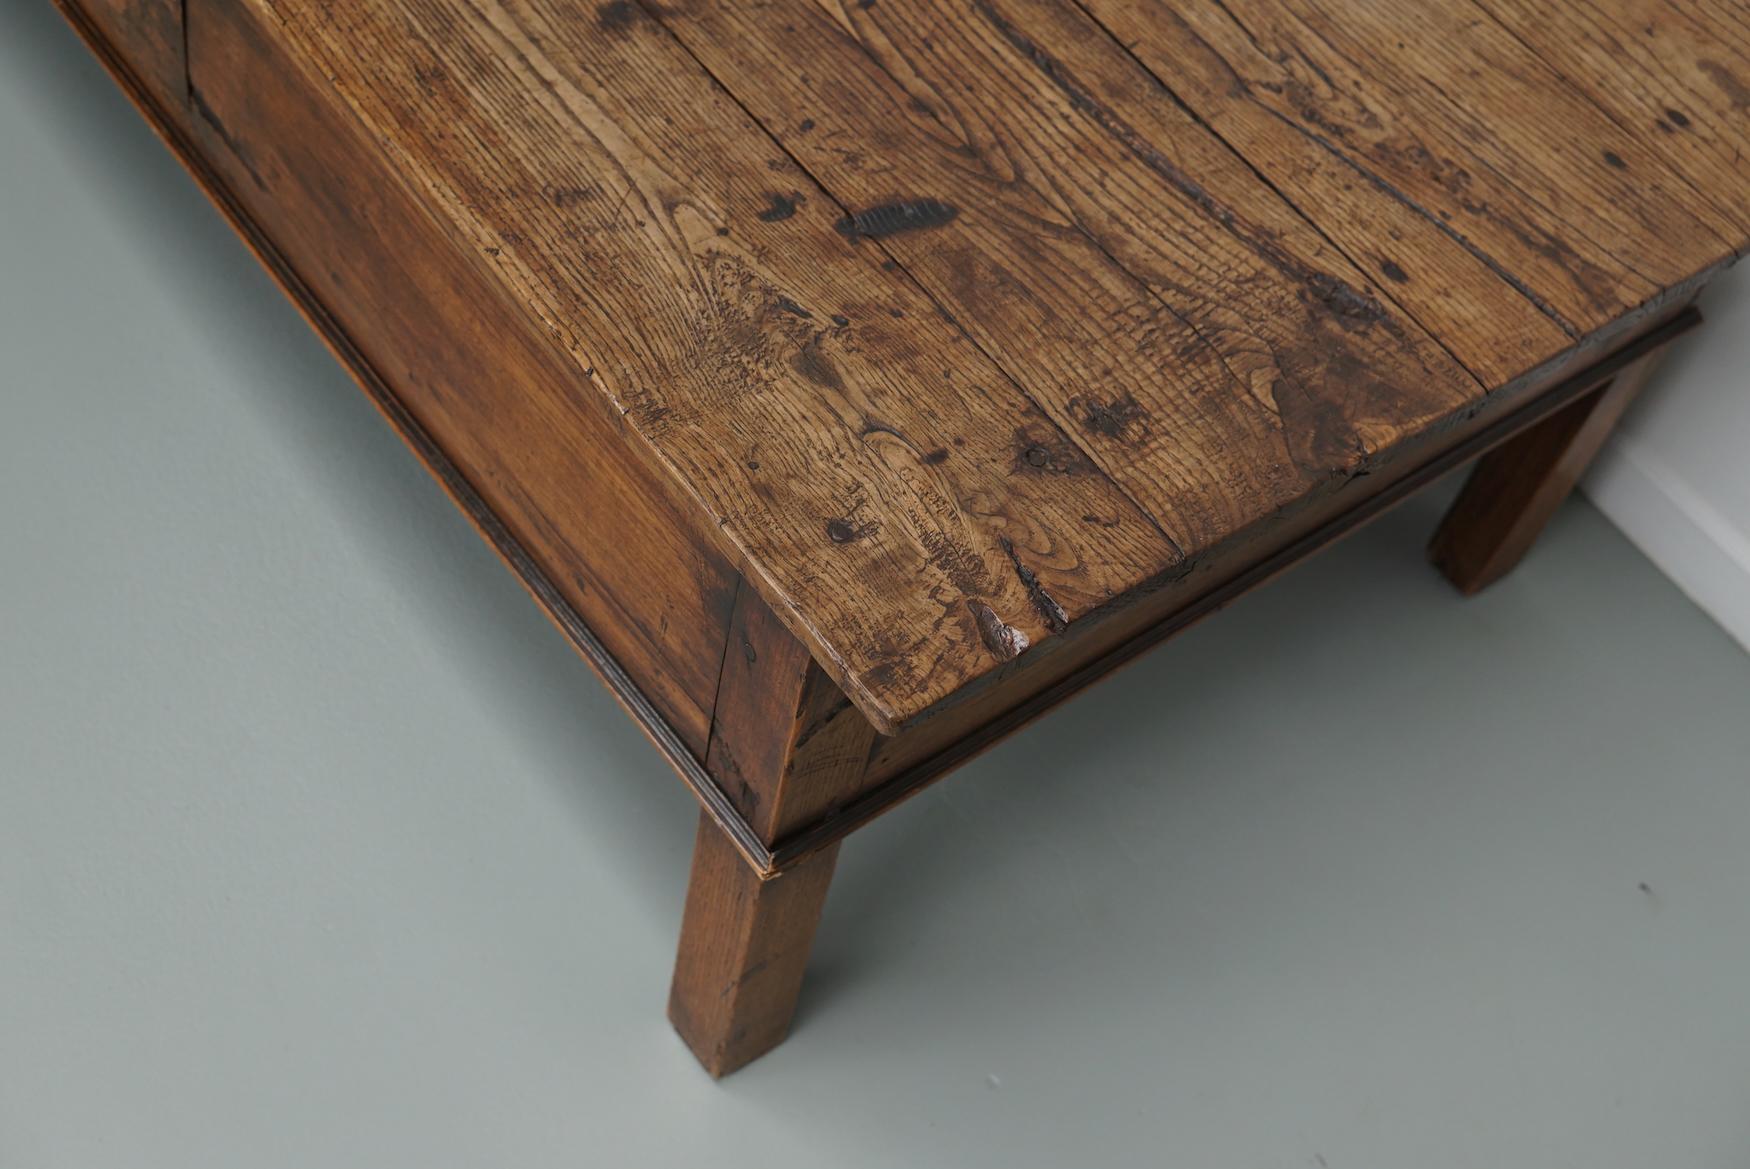 Cette table basse a été transformée à partir d'une ancienne table de préparation de ferme en châtaignier datant du 19e siècle. Il a conservé une très belle patine et une couleur riche / décoloration au fil des ans et a une taille pratique avec un